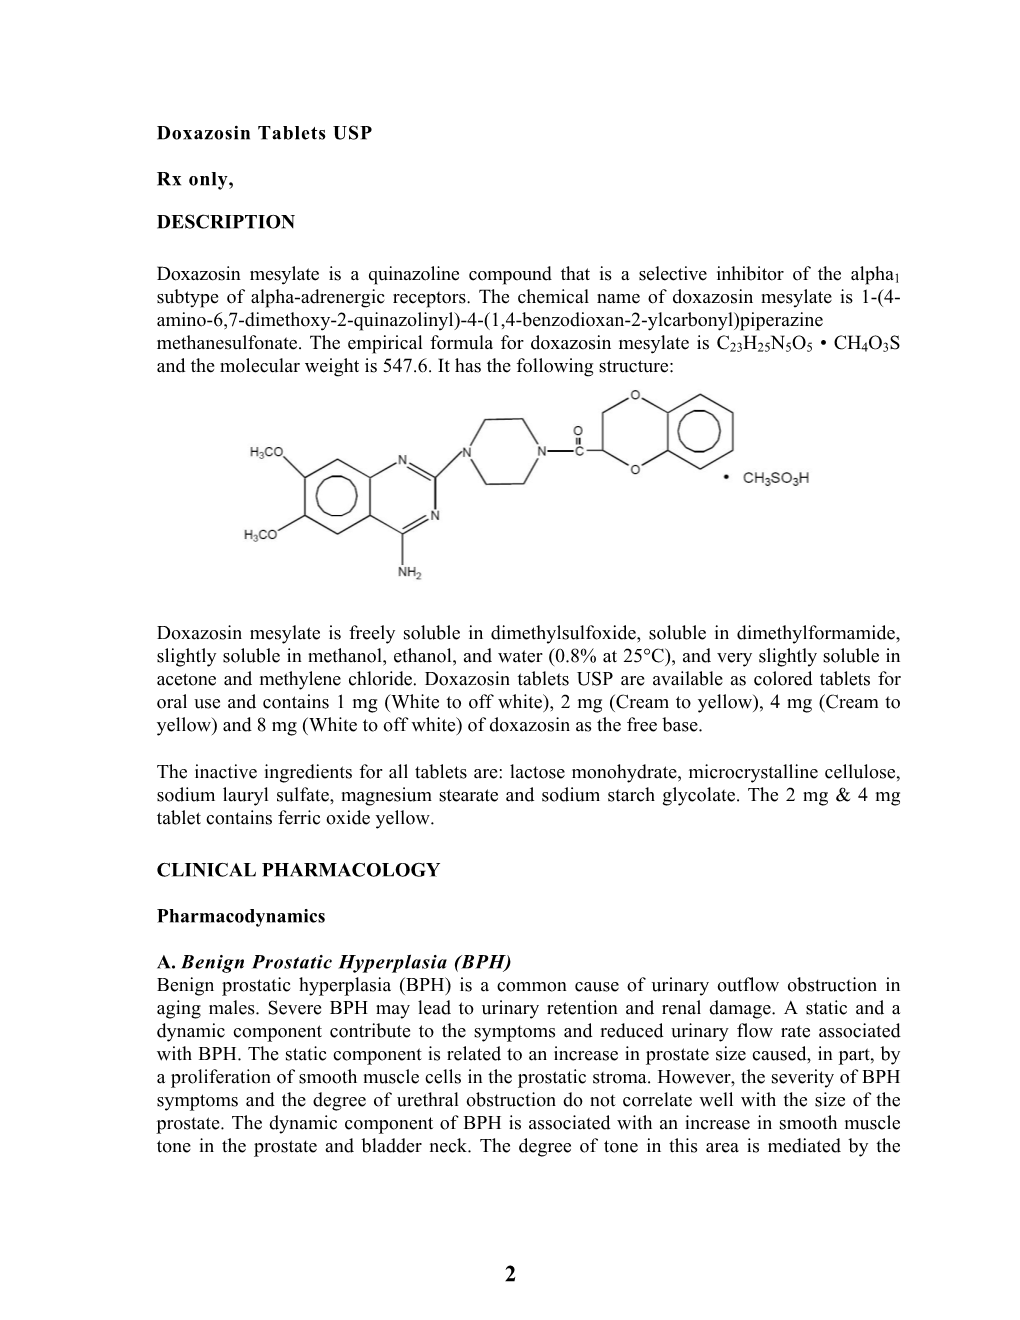 Doxazosin Tablets USP Rx Only, DESCRIPTION Doxazosin Mesylate